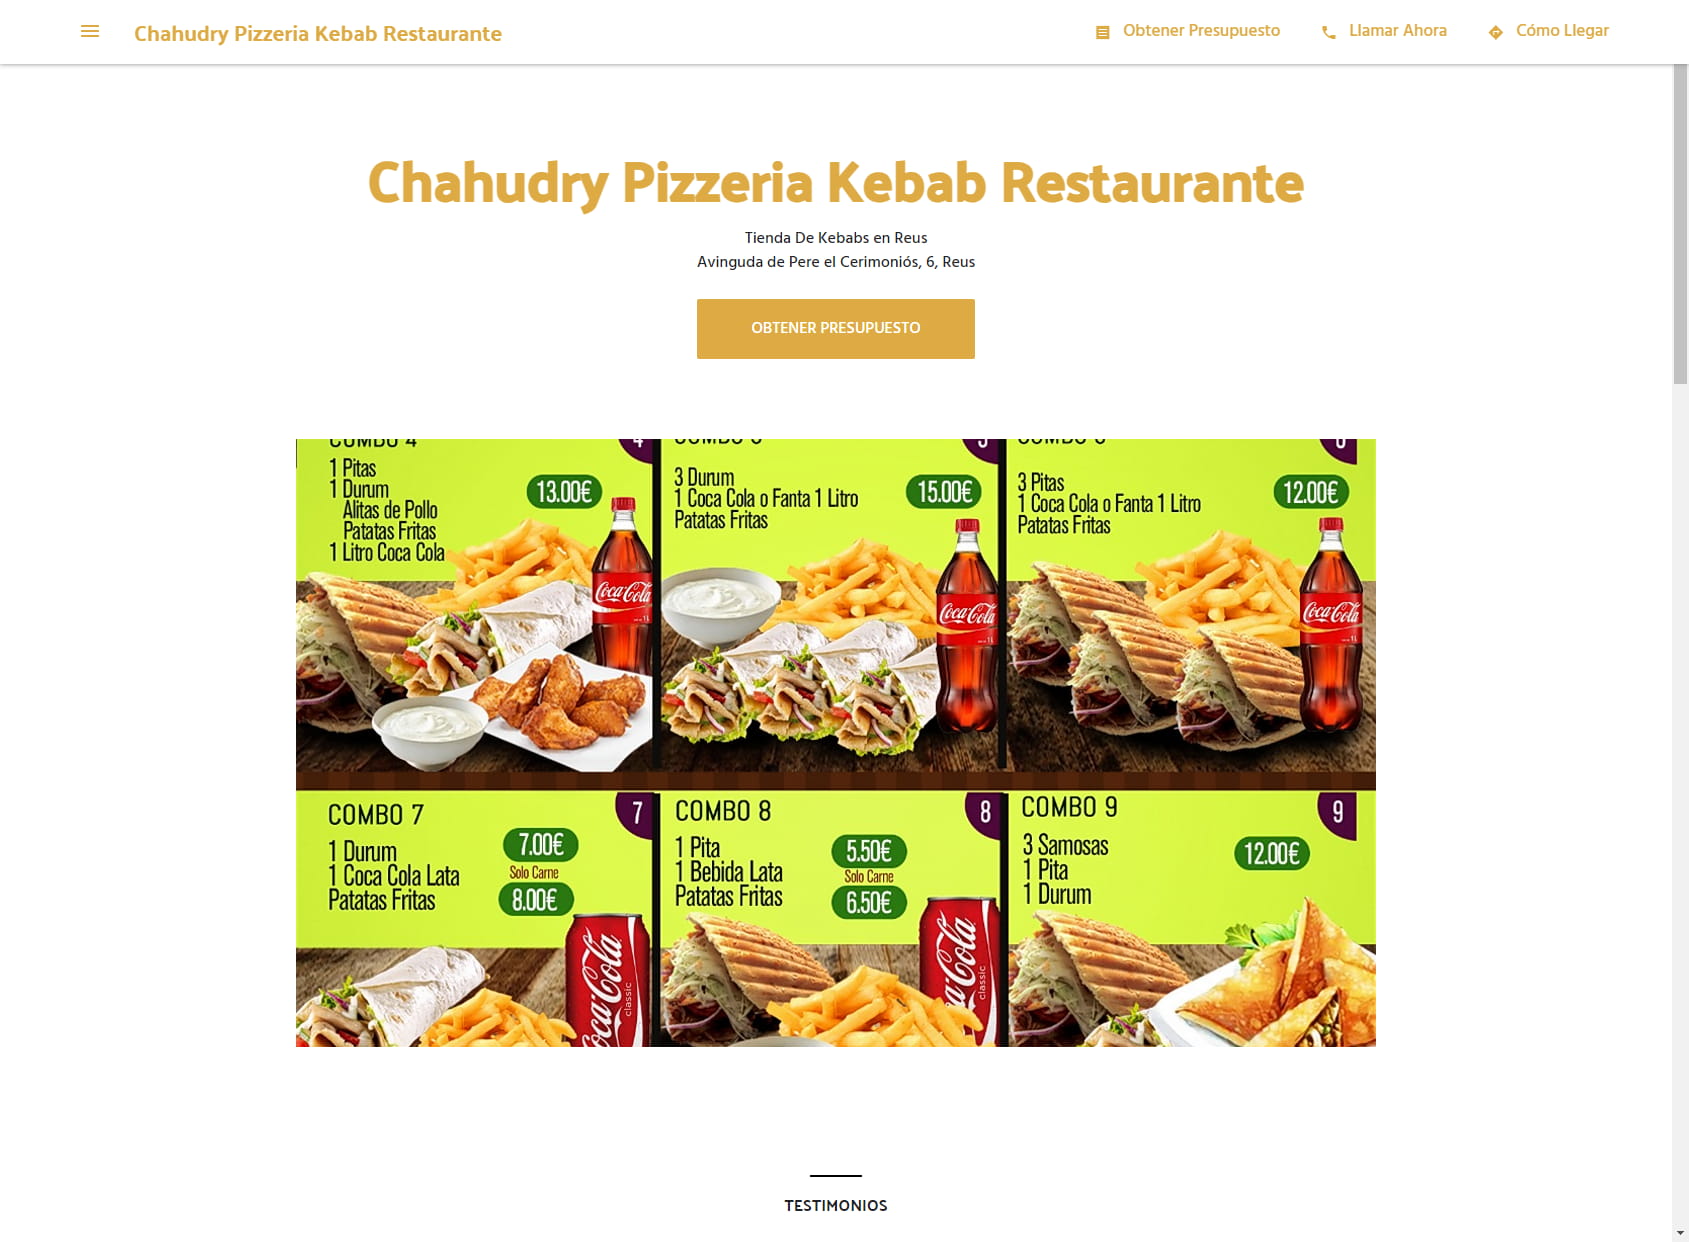 Chahudry kebab